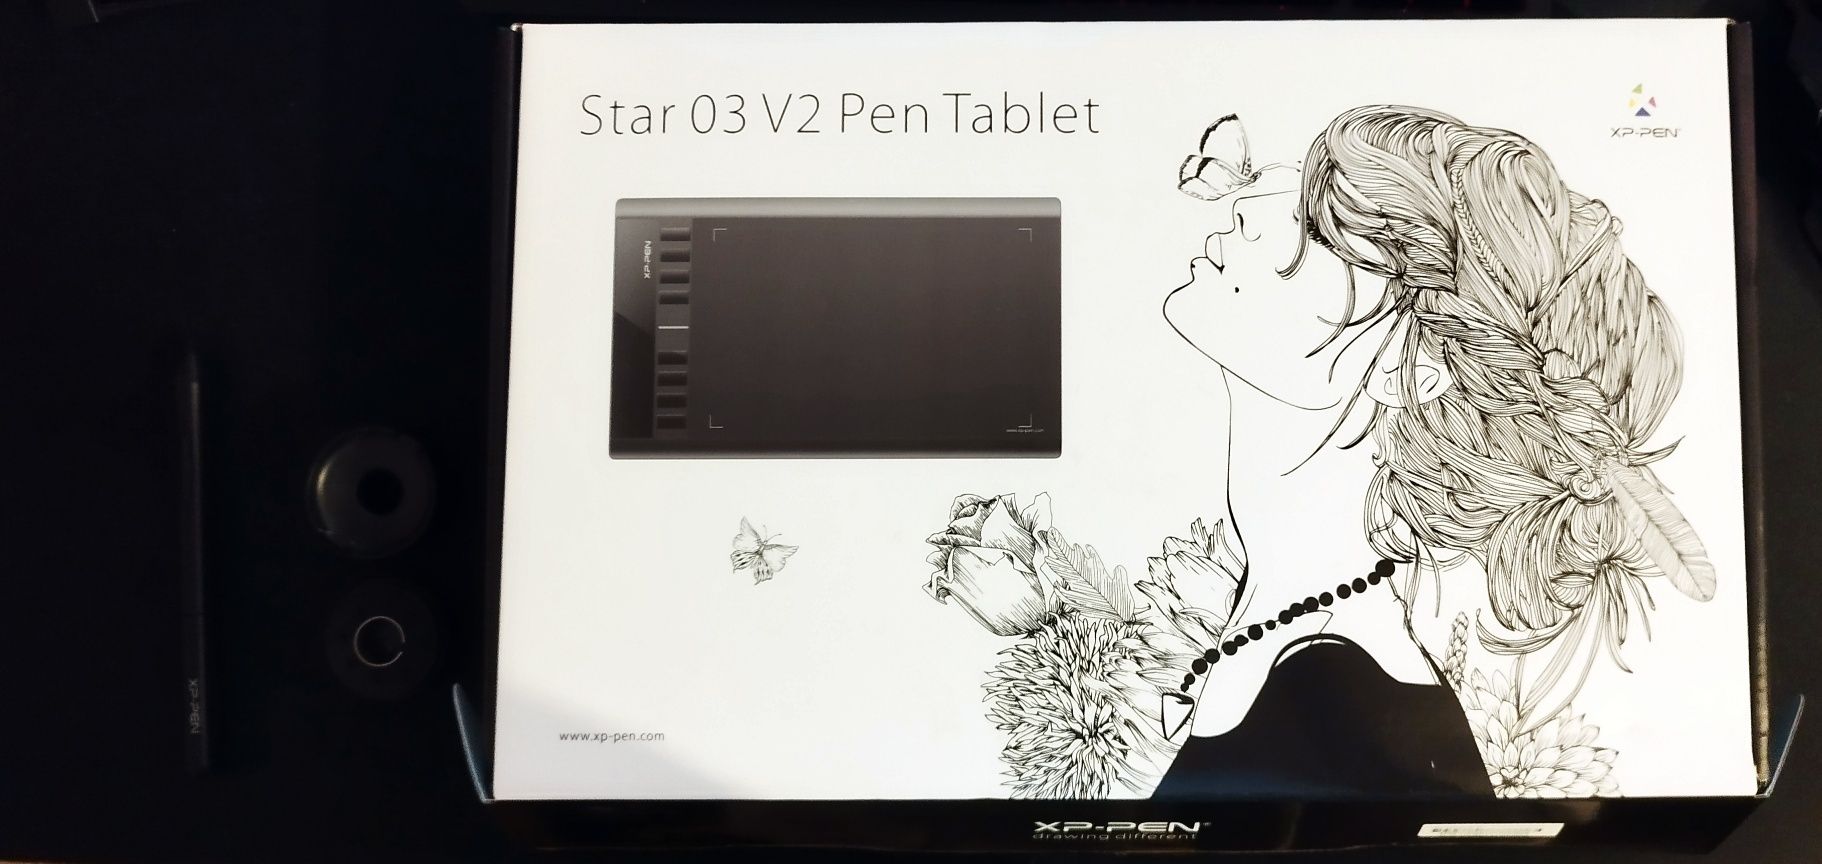 Tableta Grafica 10x6" XP-PEN Star 03 v2